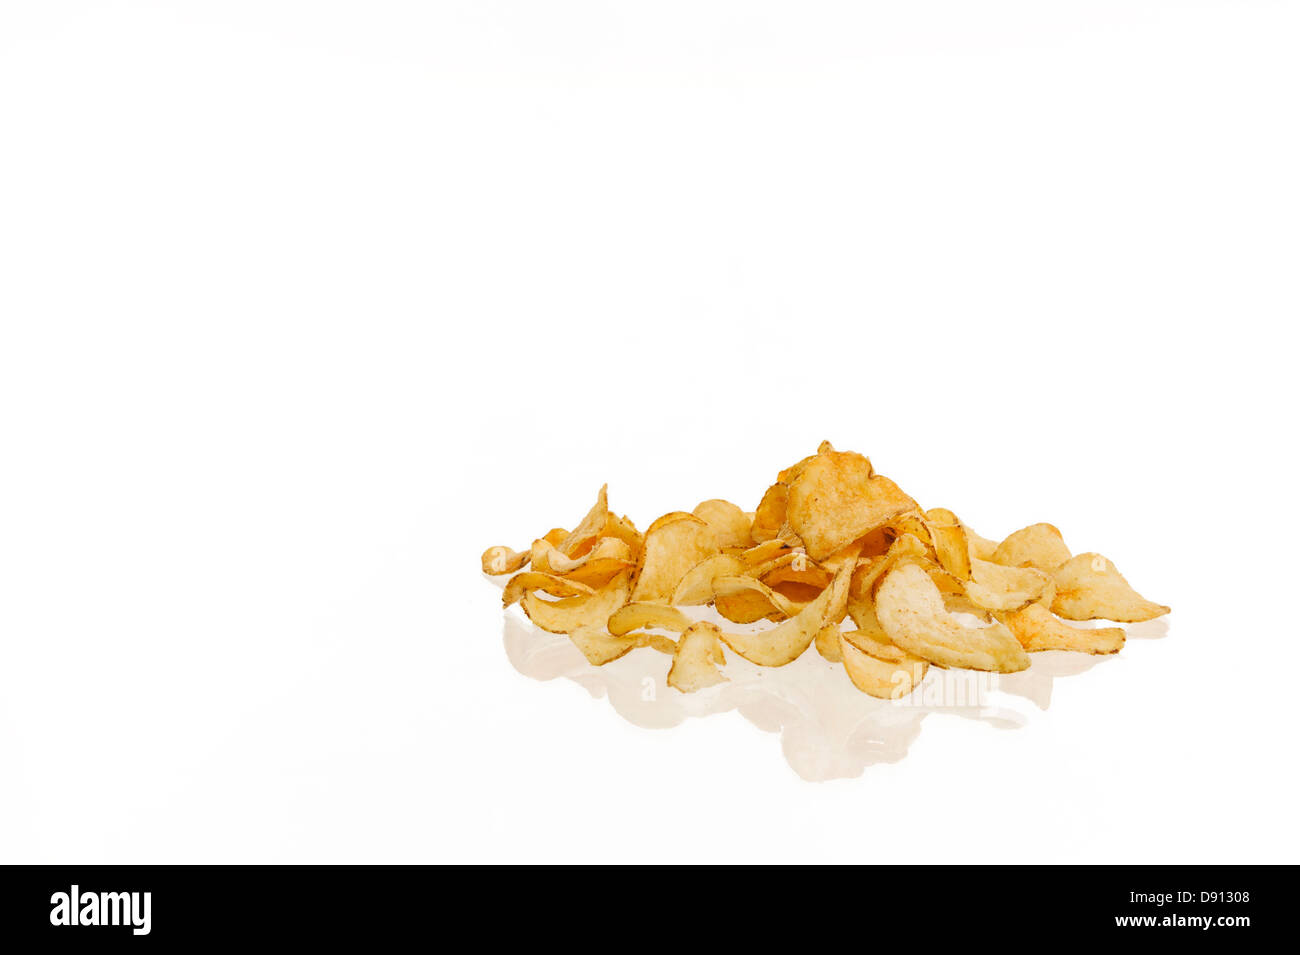 Crisps on white background Stock Photo